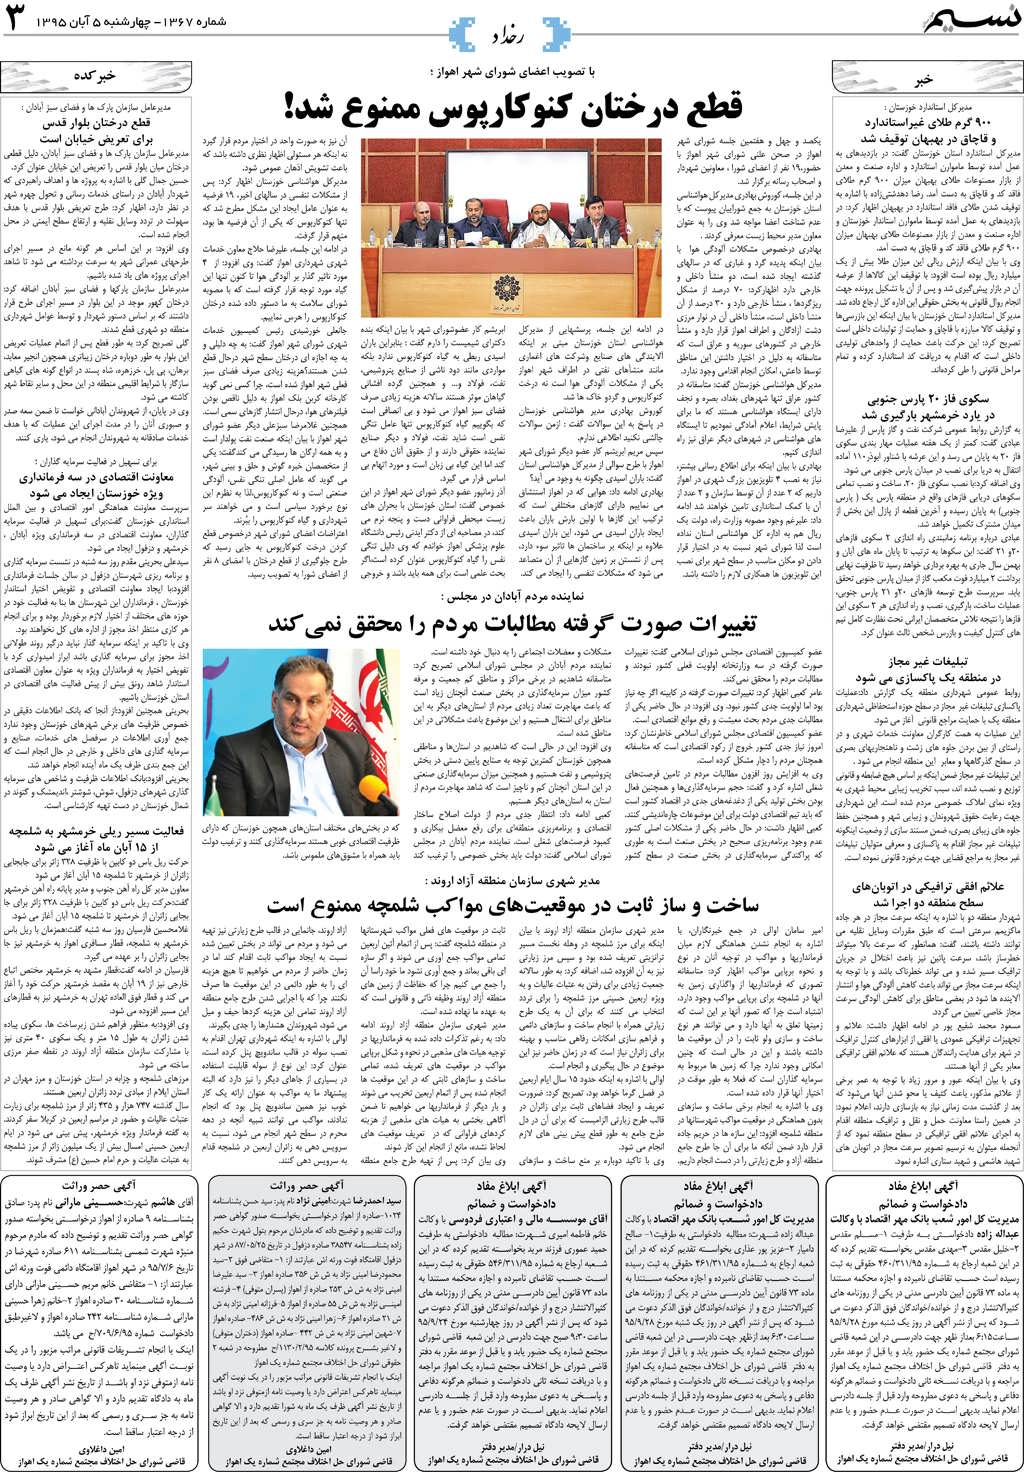 صفحه رخداد روزنامه نسیم شماره 1367